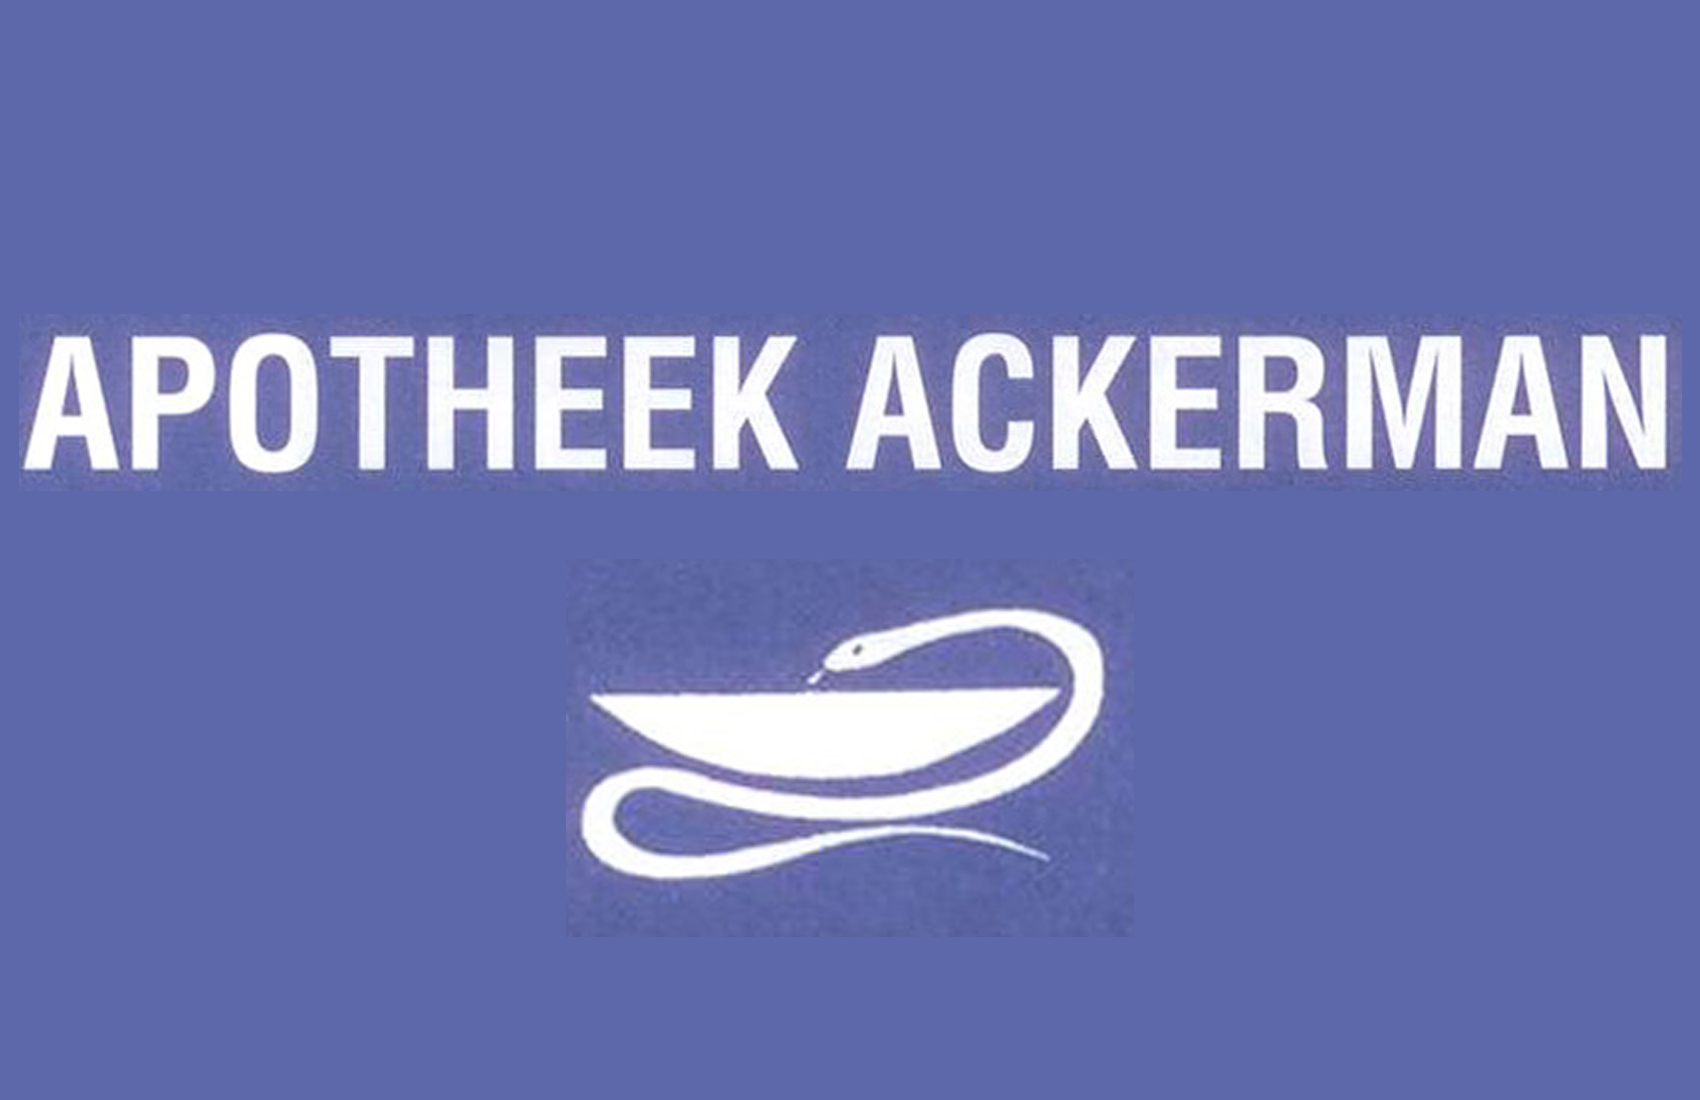 Ackerman C. Apotheek